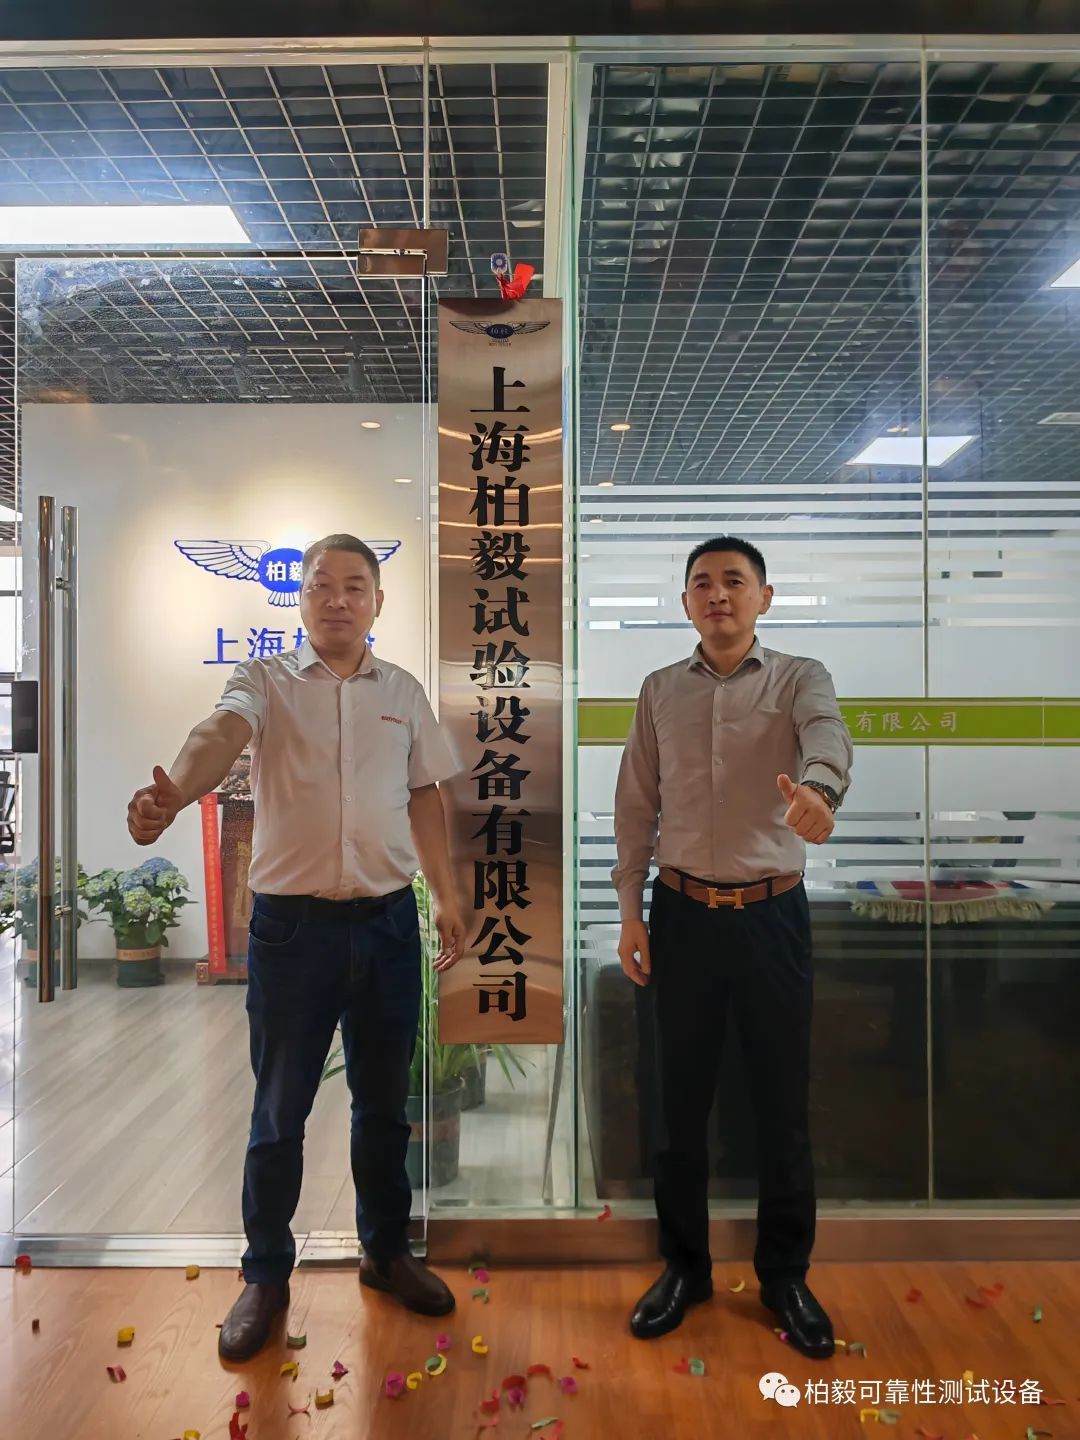 上海柏毅試驗設備有限公司合肥分公司成立